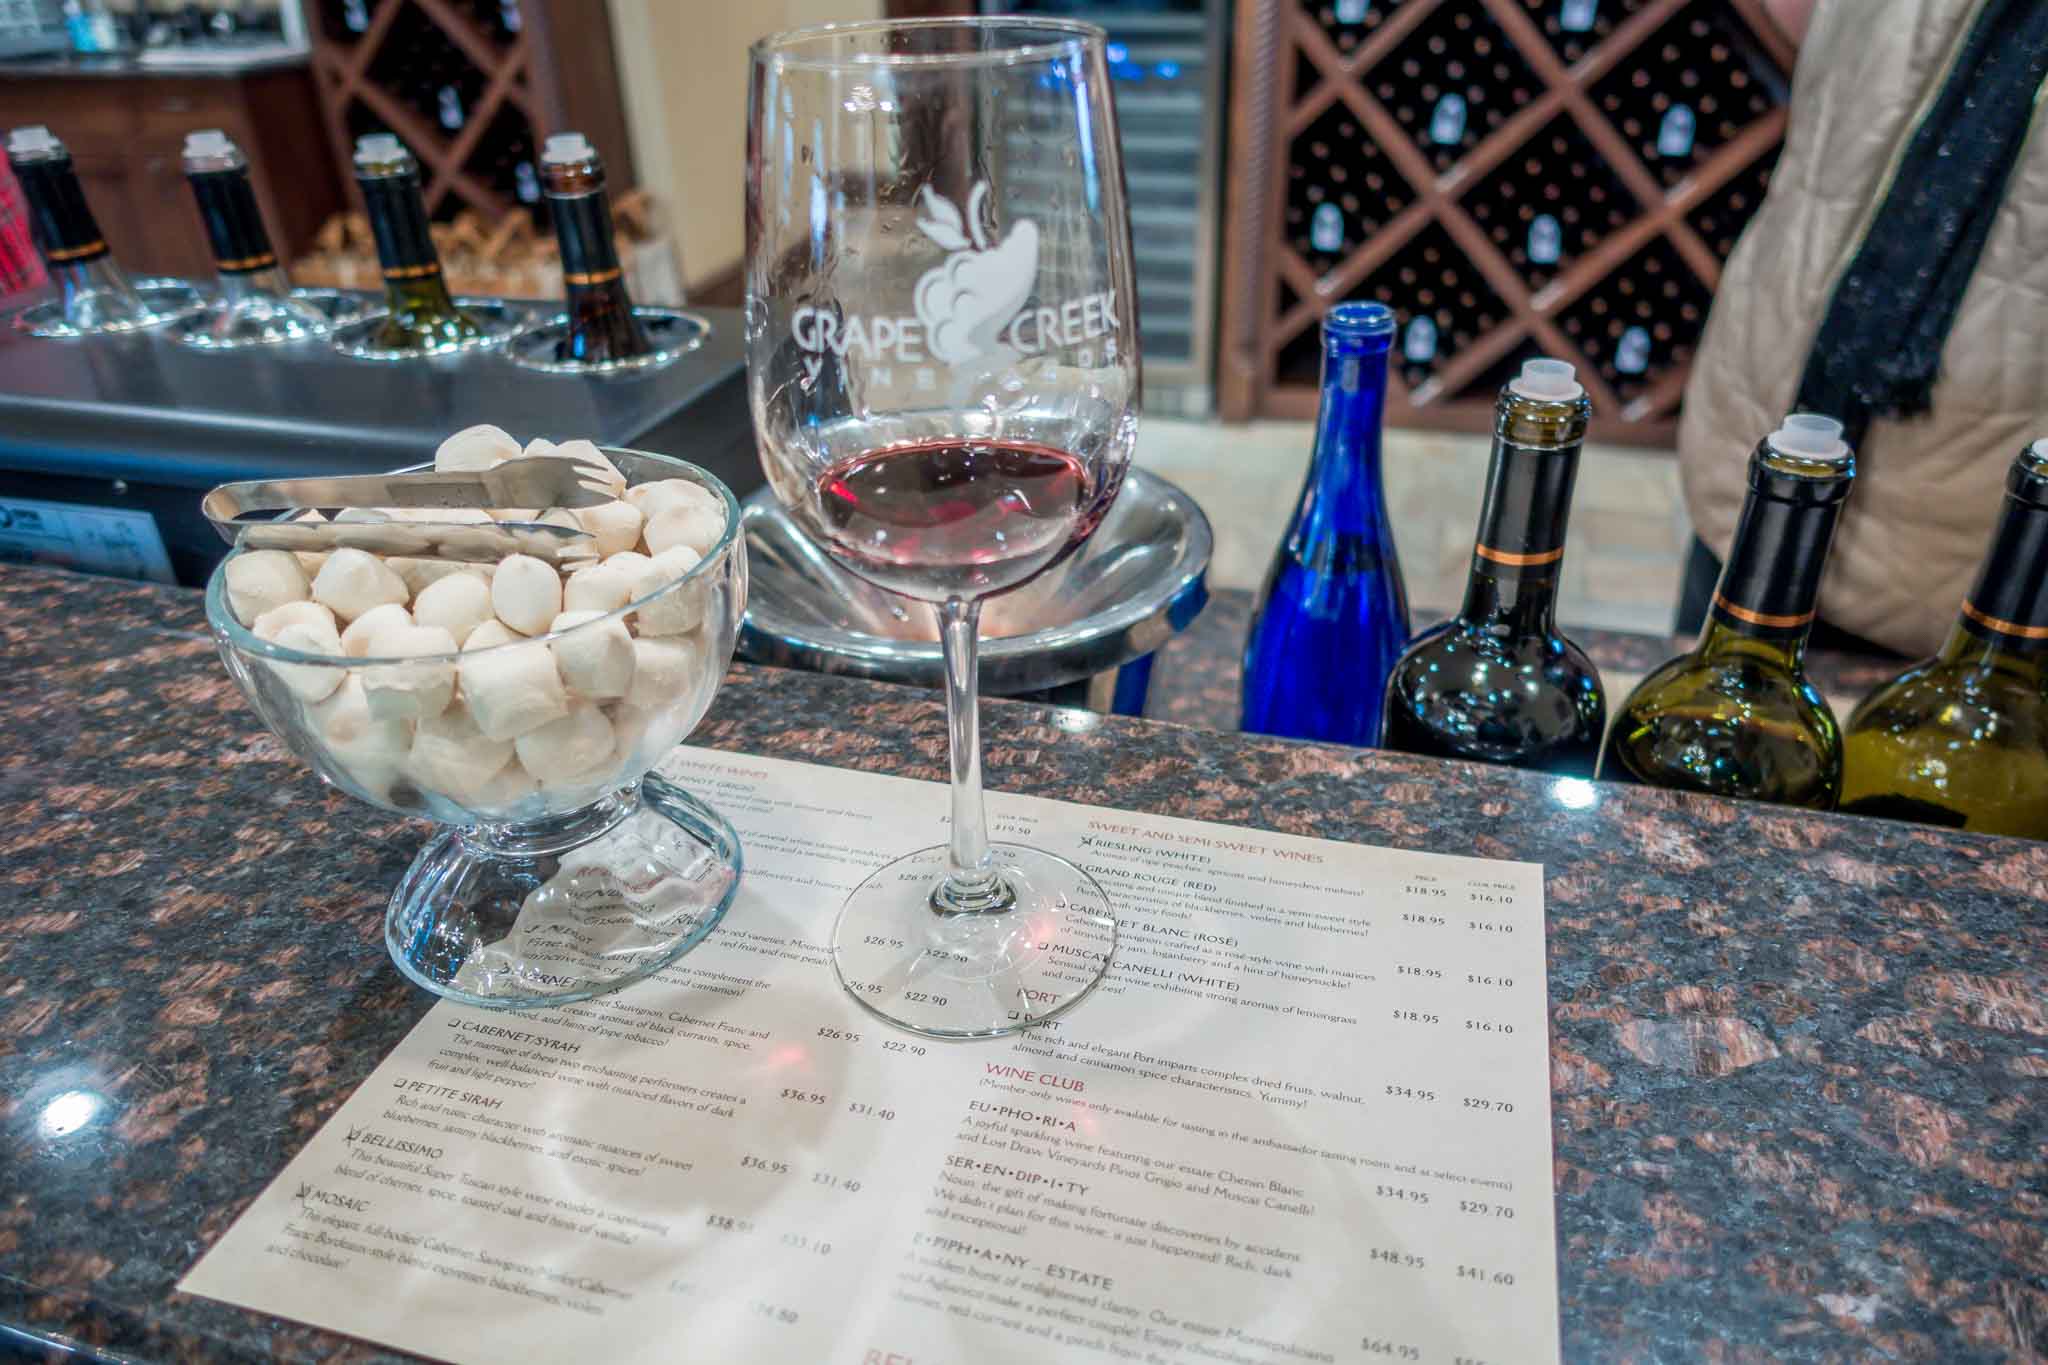 Wine glass and tasting menu at Grape Creek Vineyards